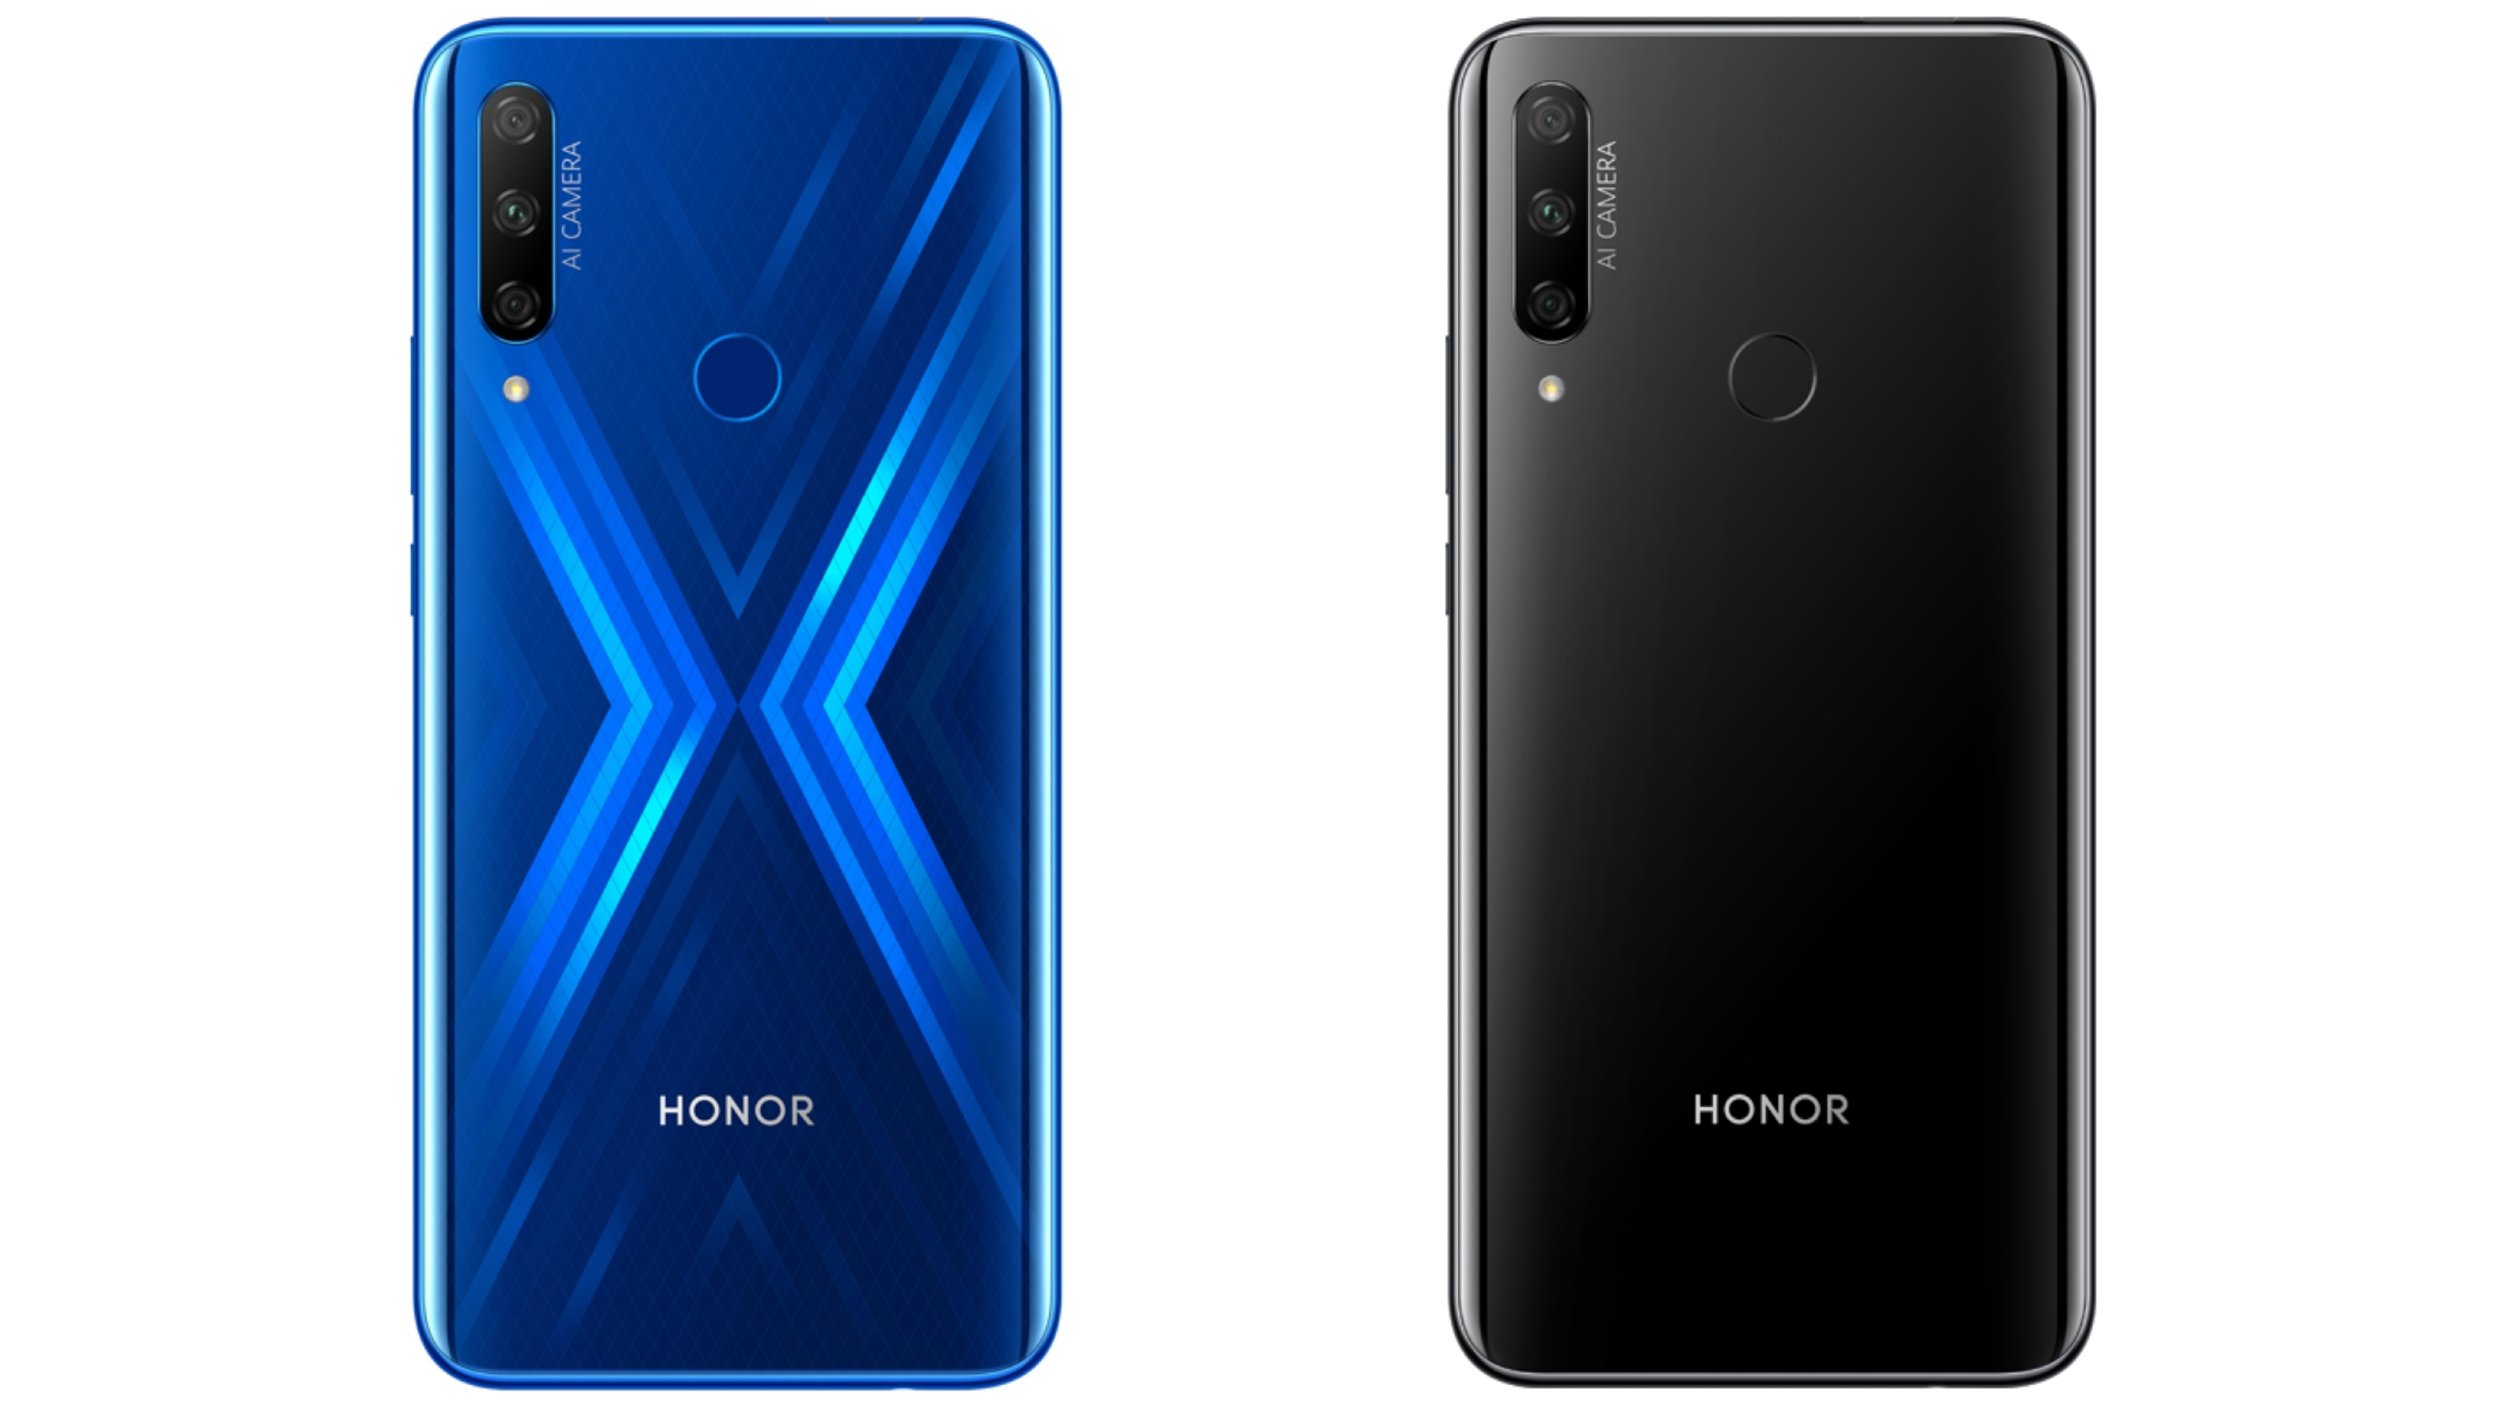 Das Honor 9X kommt sowohl im schicken Blau als auch eleganten Schwarz daher.